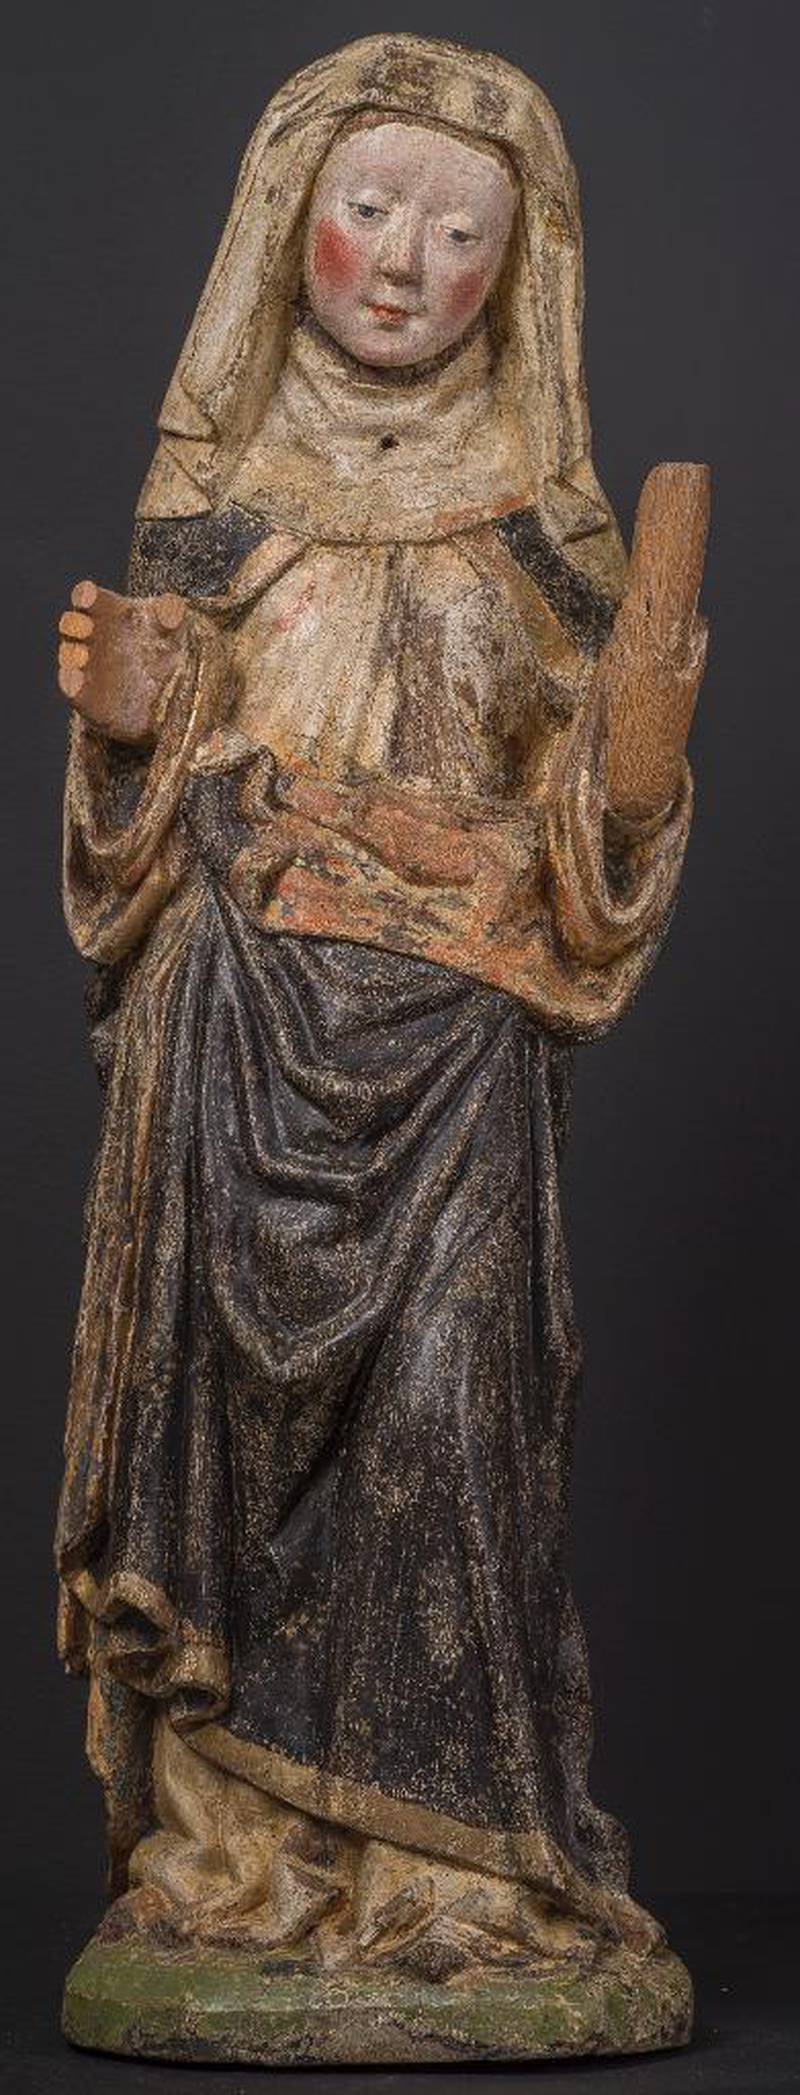 USIKKERT: Ingen vet sikkert hvem helgenskulpturene forestiller. En teori er at begge skulpturene forestiller Sankta Birgitta.